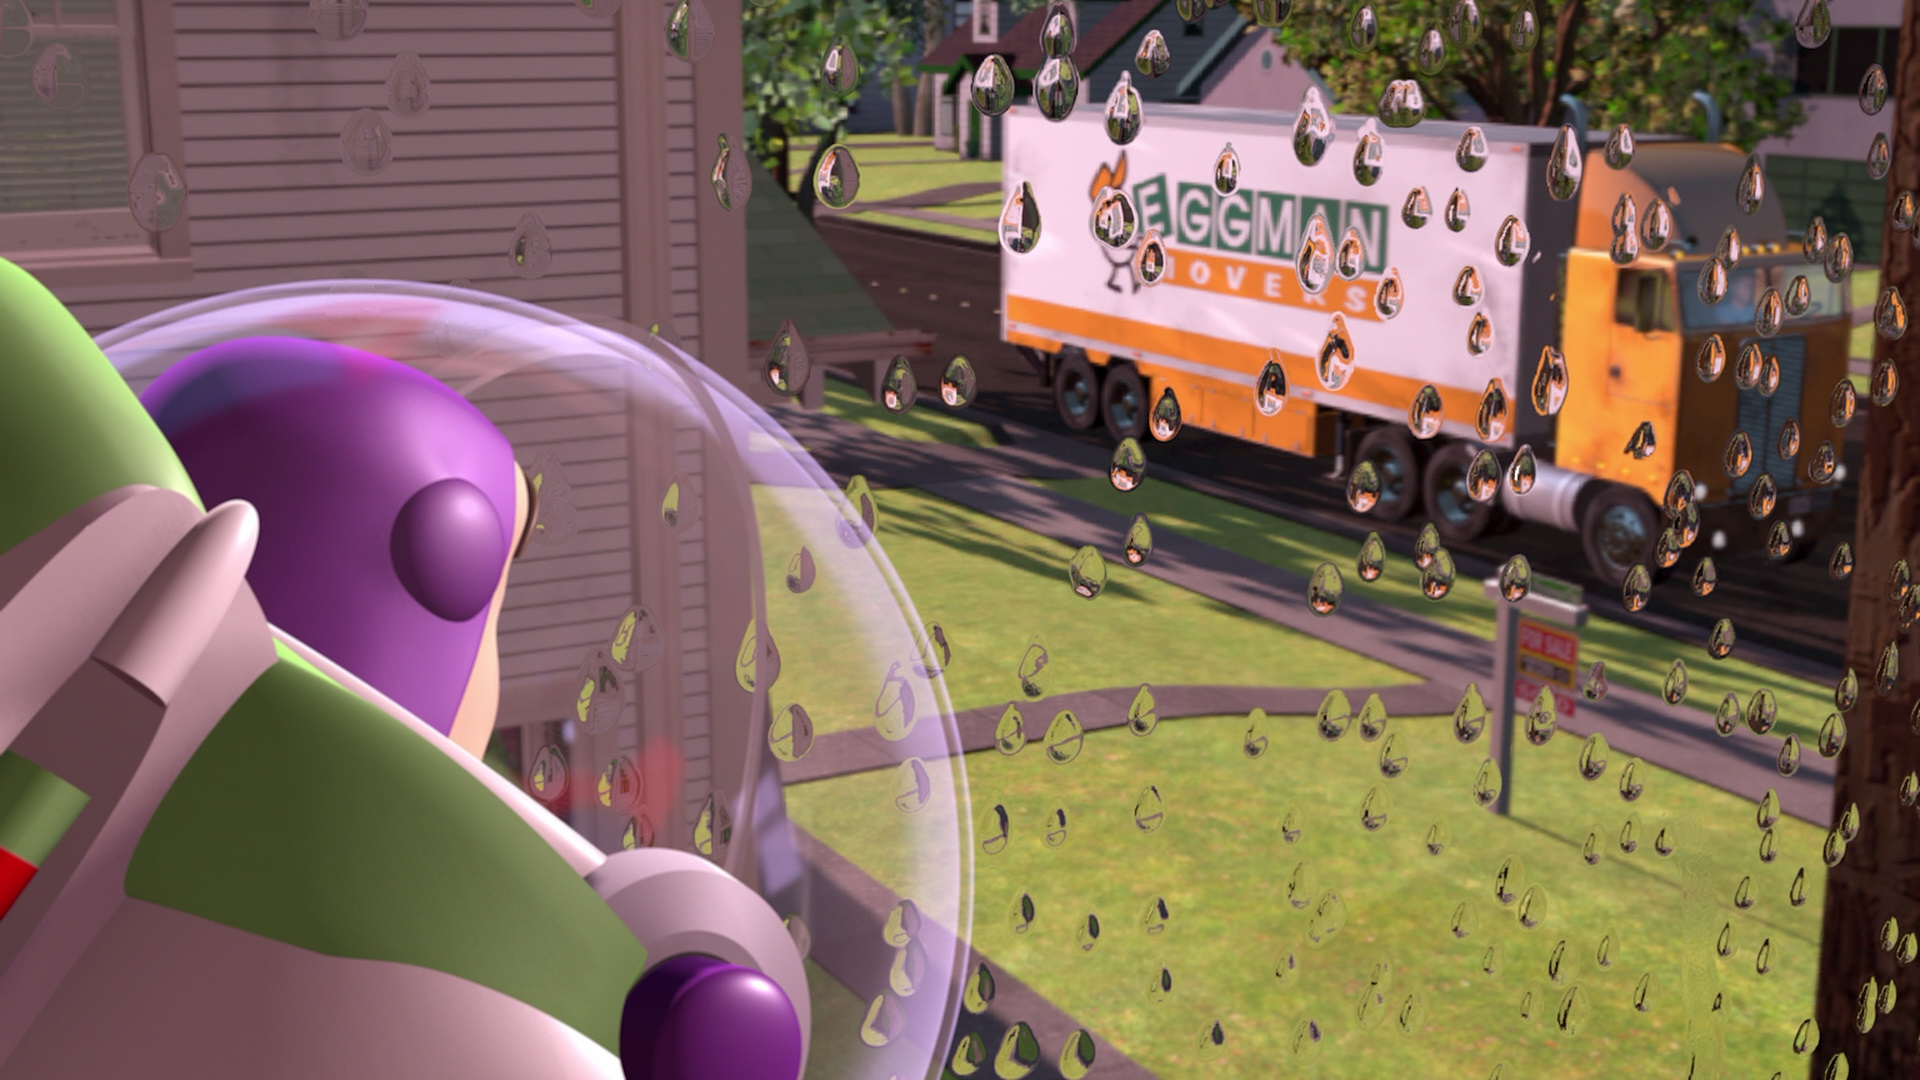 Eggman Movers | Disney Wiki | FANDOM powered by Wikia